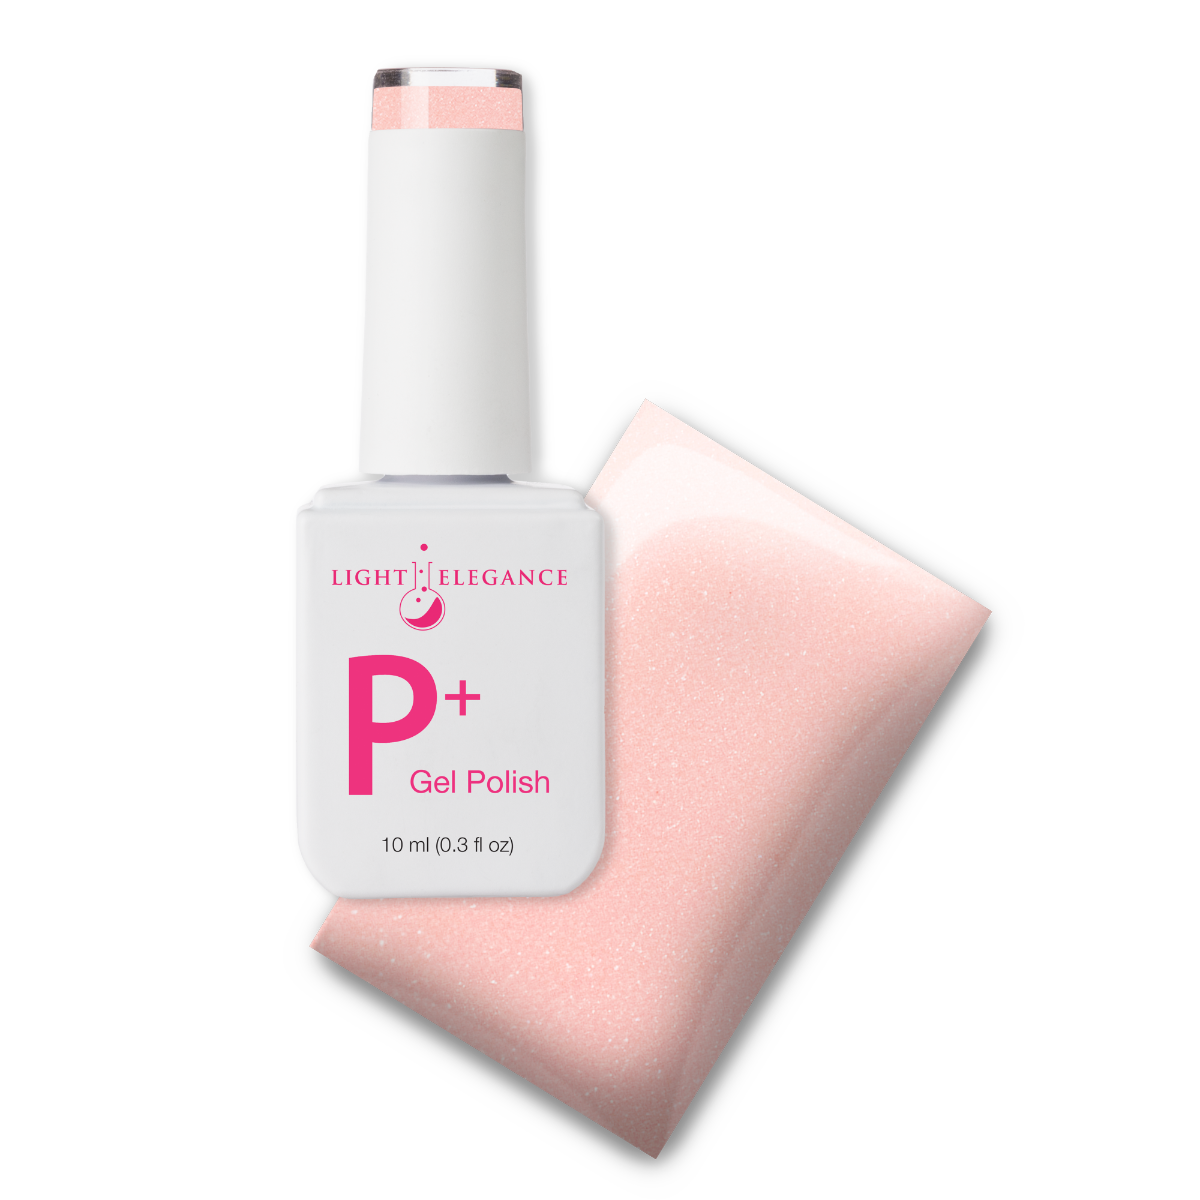 P+ Pouty Pink Gel Polish